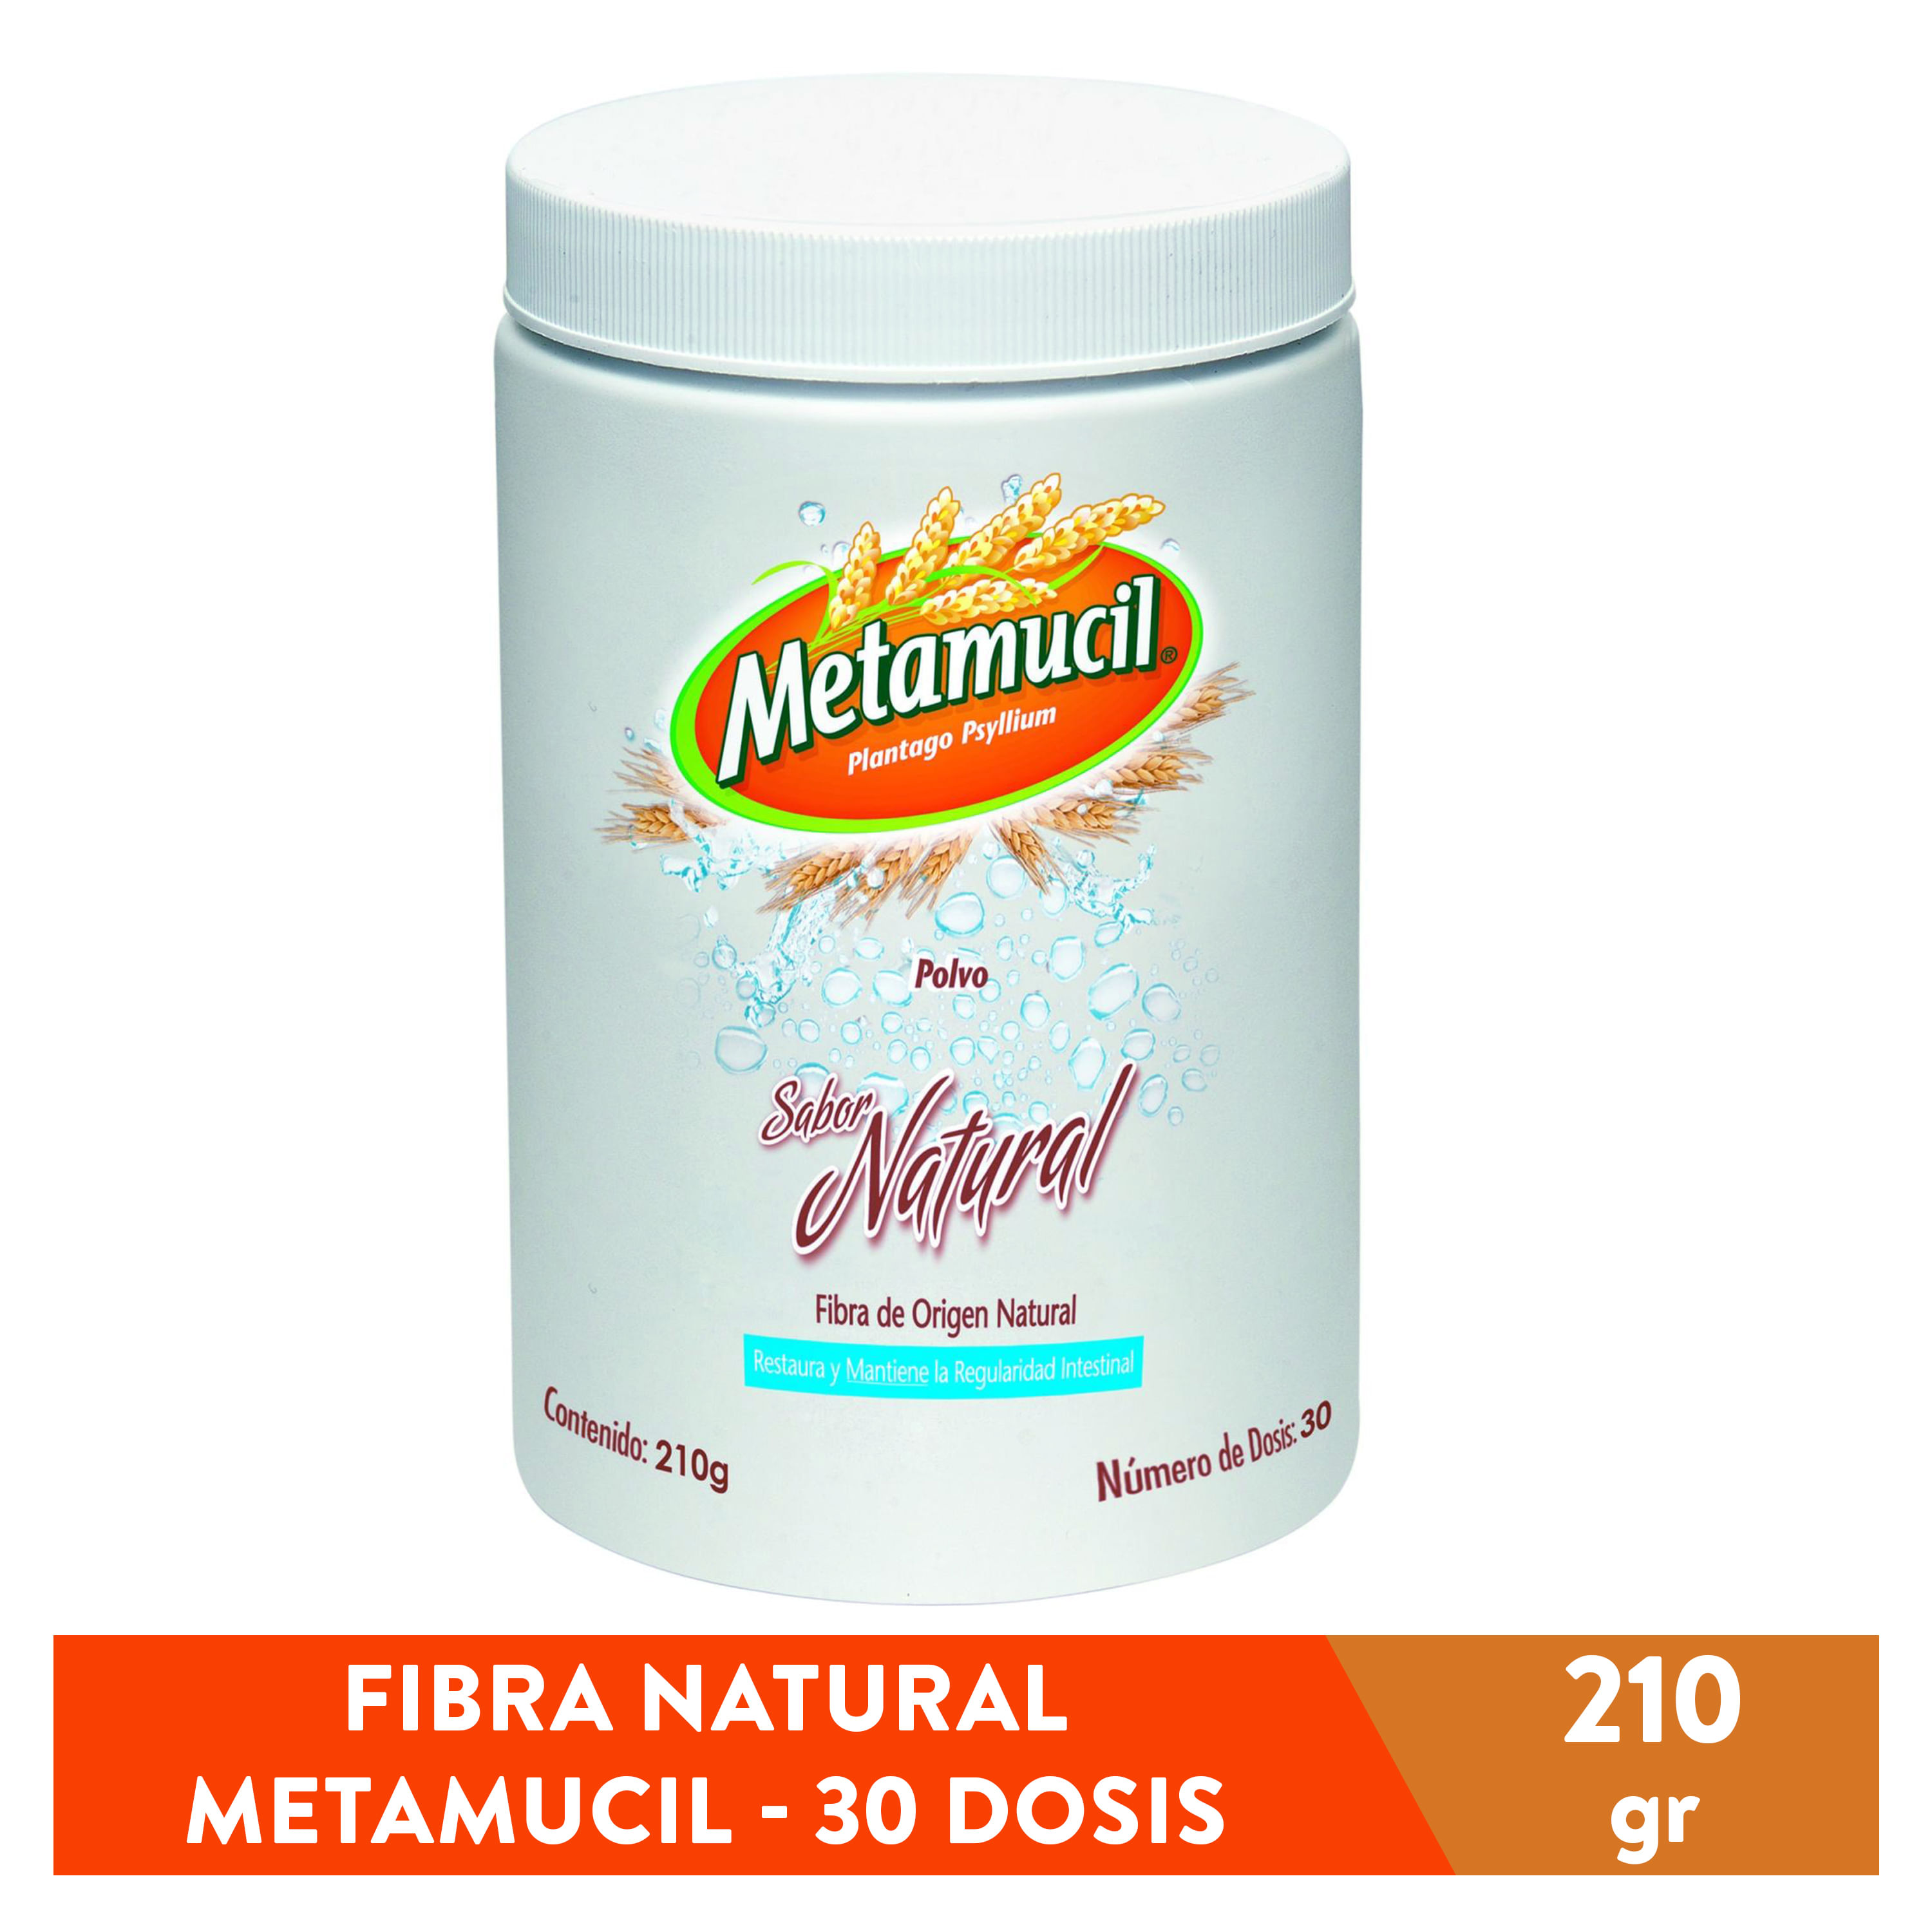 Fibra-Natural-Metamucil-Multibeneficios-30-dosis-210g-1-4340